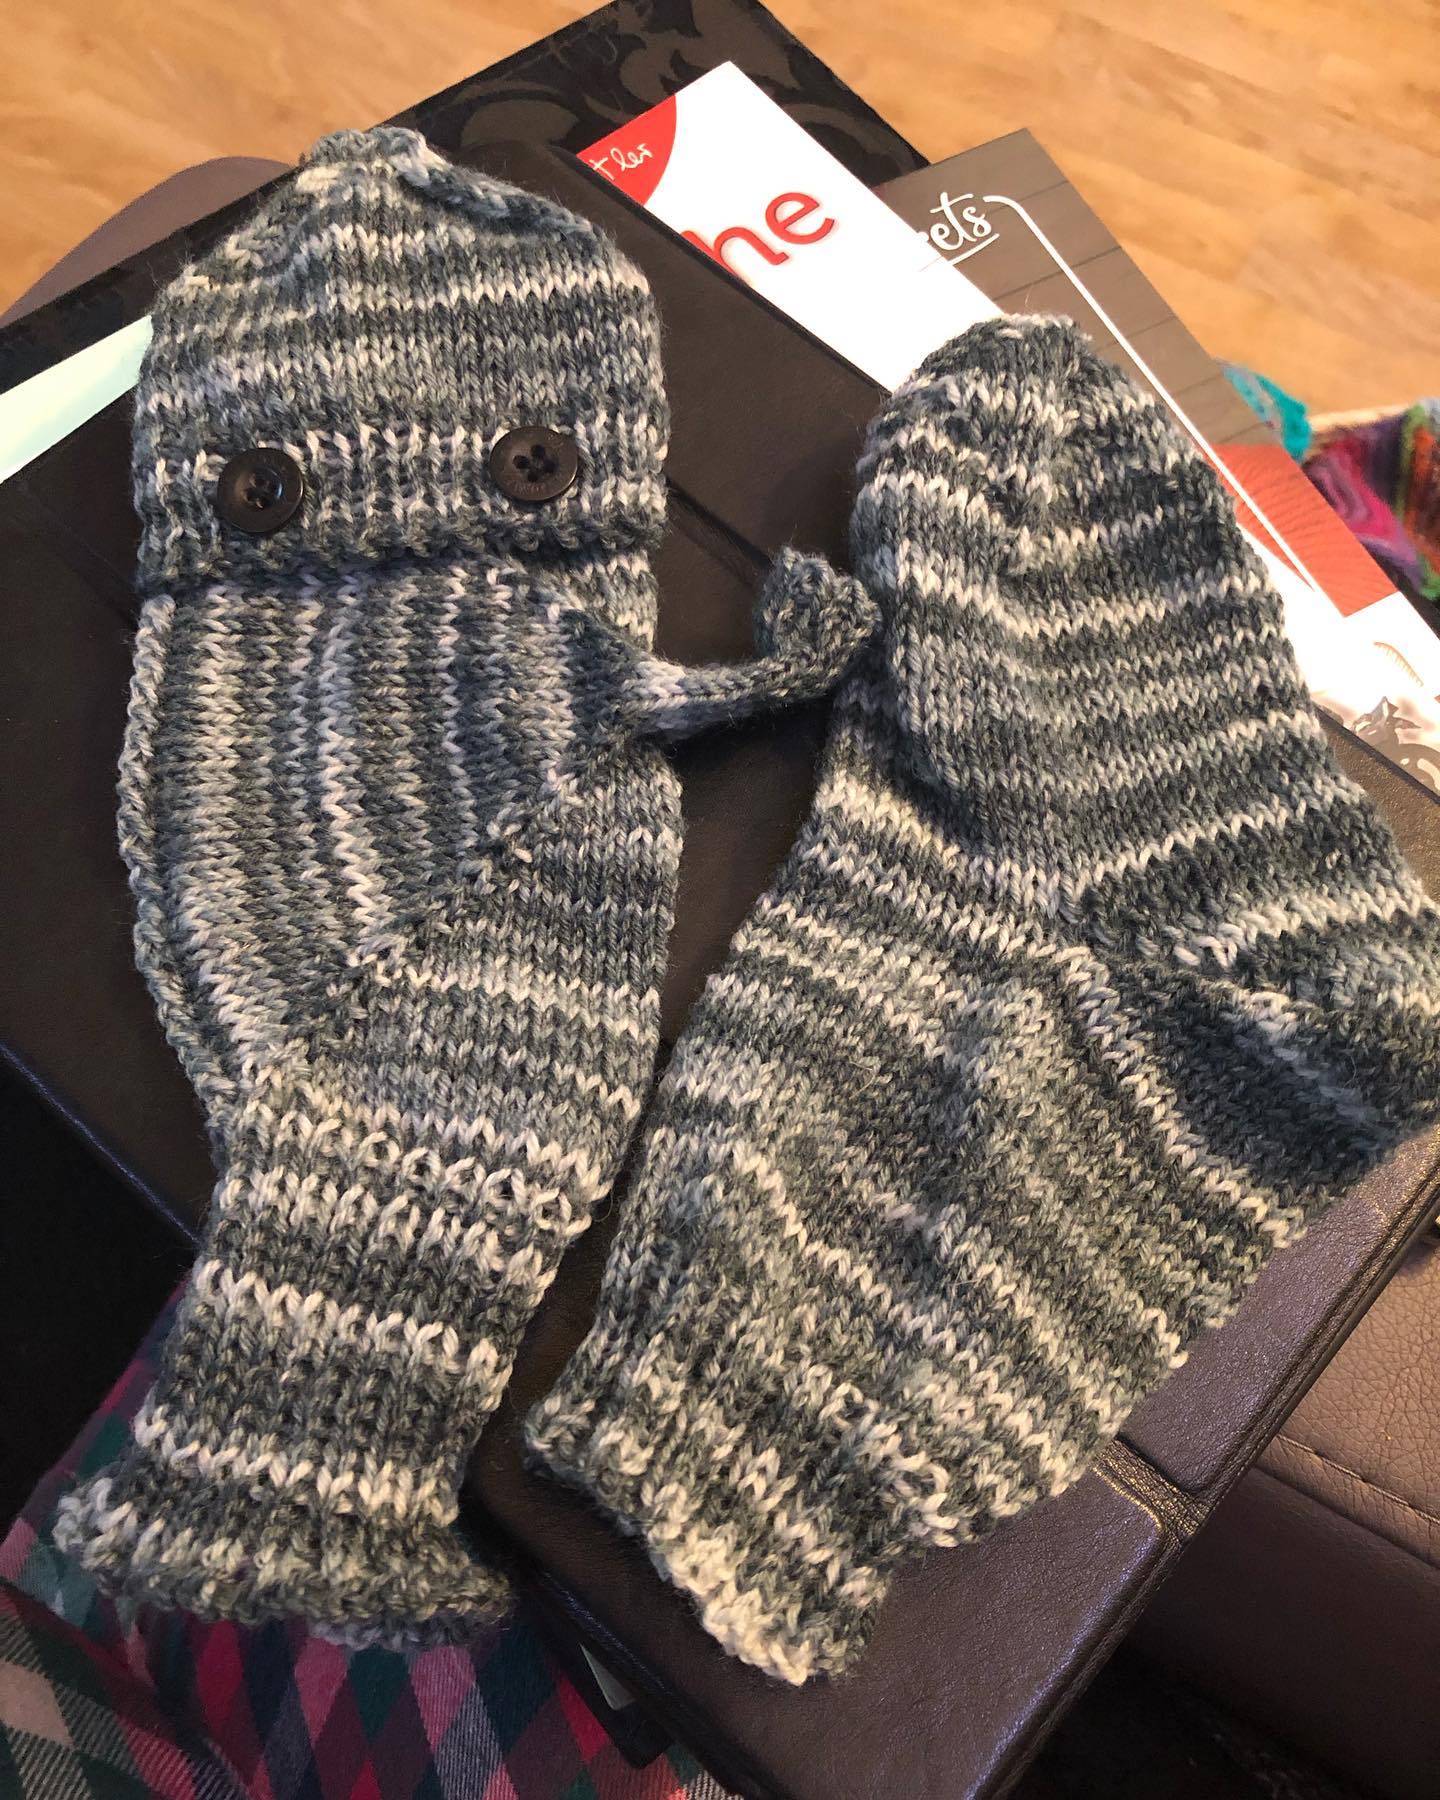 Ein spezielles Paar Handschuhe für einen ganz besonderen Lieblingsmenschen 😊 
#knitting #knittersofinstagram #knittingsocks #knittingwithlove #knittingwear #handschuhe #socken #sockenwolle #opal #handmadewithlove #surprise #sockenstricken #lieblingsmensch #familie #merrychristmas #winter #warmehände #sauerland #menschenmitbehinderung